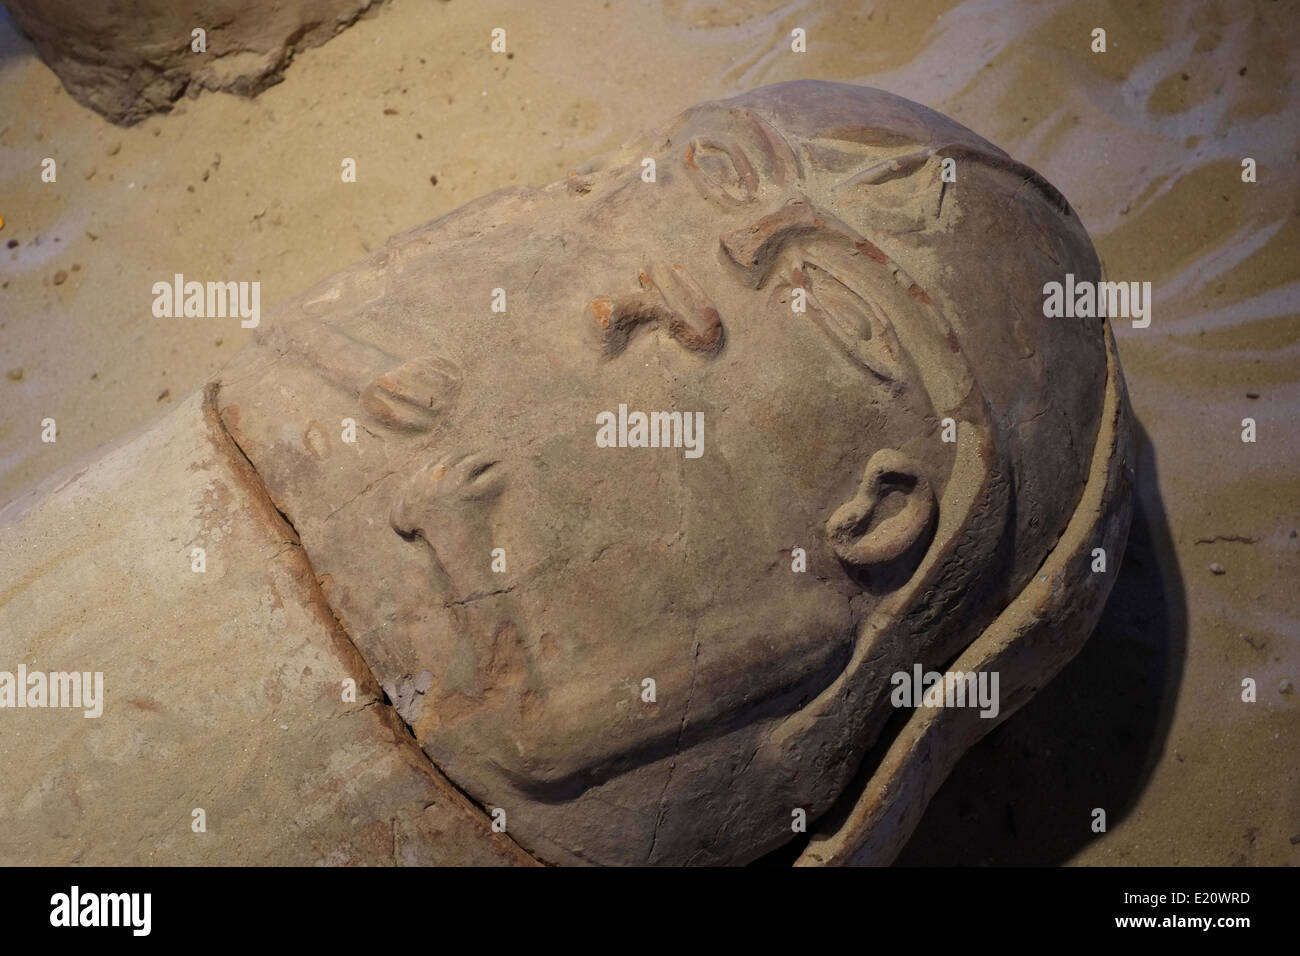 Ancient Egyptian sarcophage anthropomorphe trouvés à Gaza exposées en Eretz Israël Museum Un musée archéologique et historique dans le quartier de Ramat Aviv Tel Aviv ISRAËL Banque D'Images